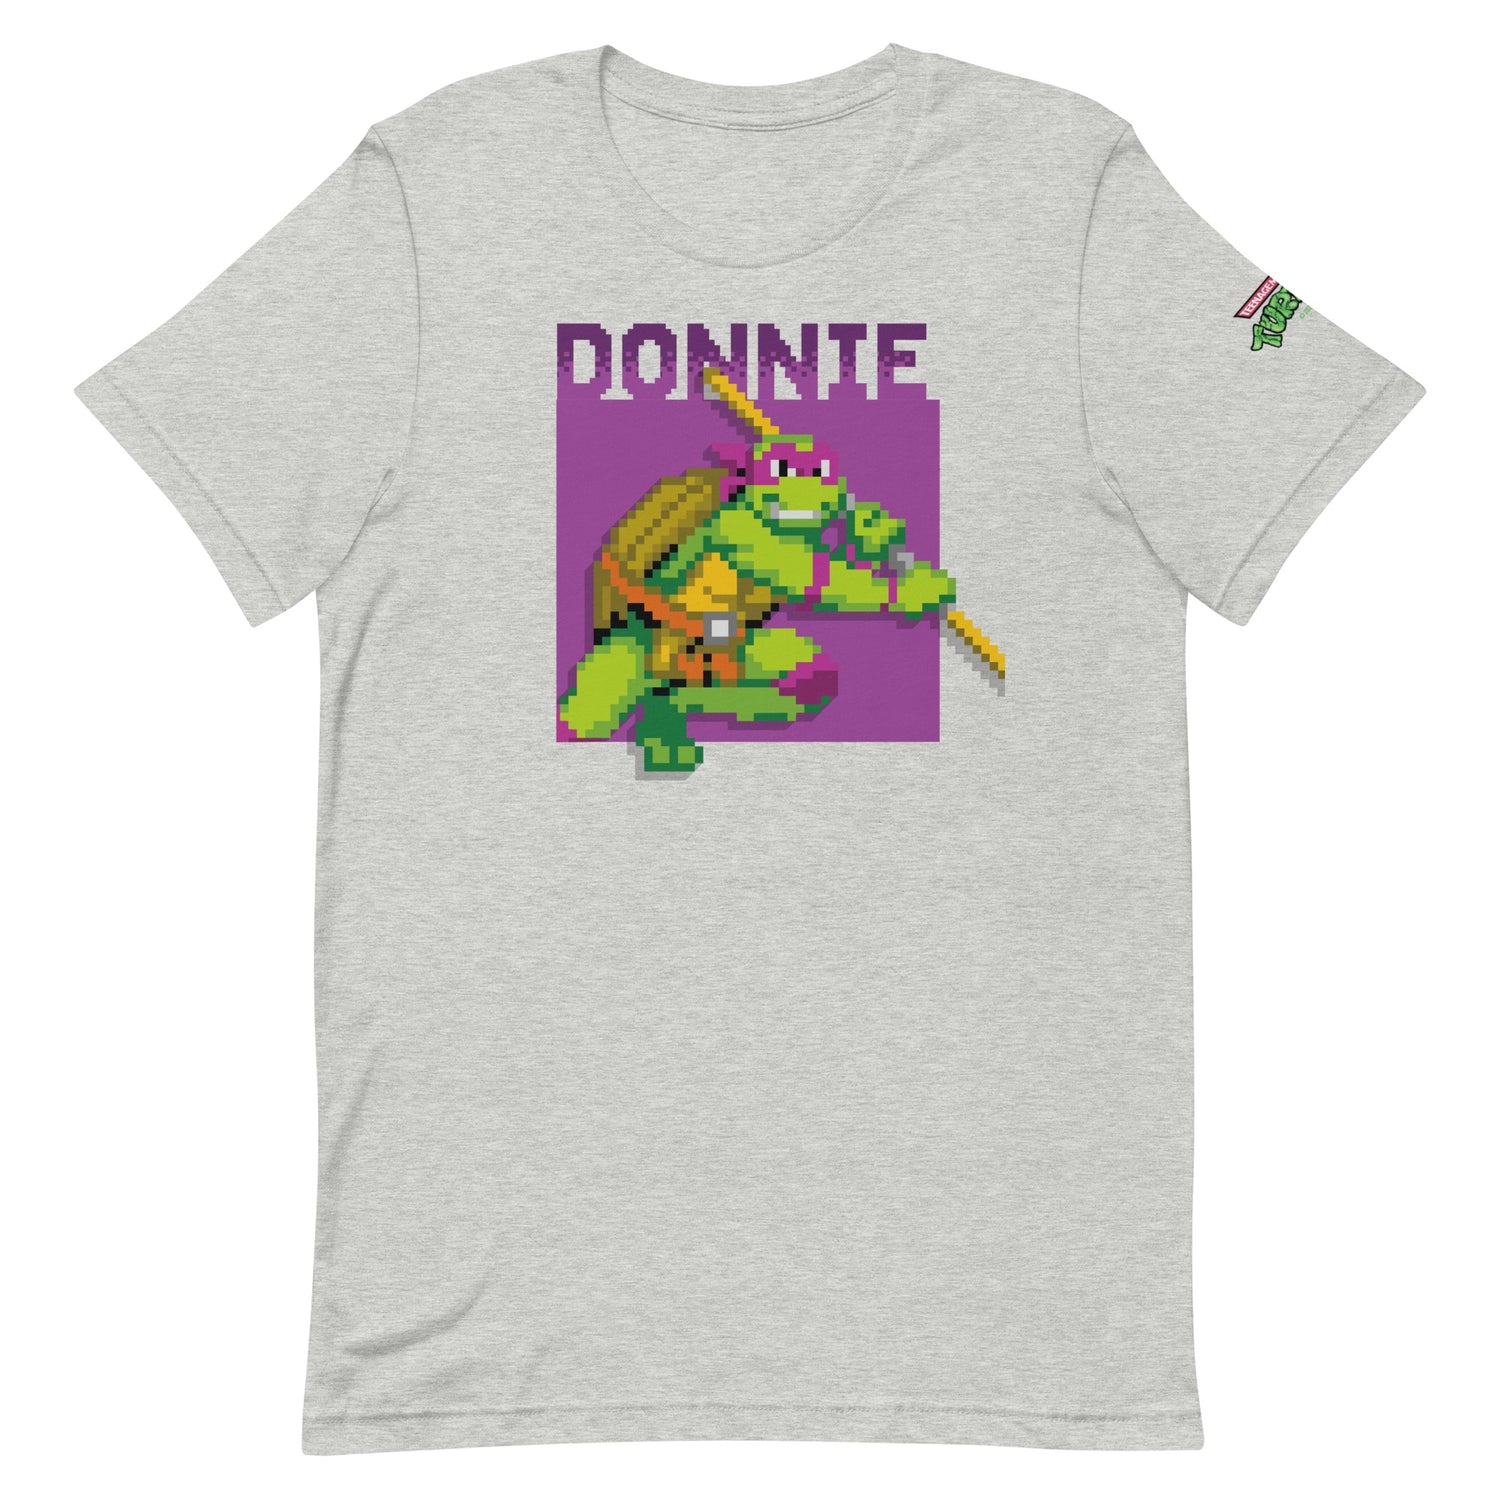 Teenage Mutant Ninja Turtles Donnie Arcade Ninja Adult Short Sleeve T-Shirt Black Heather / M